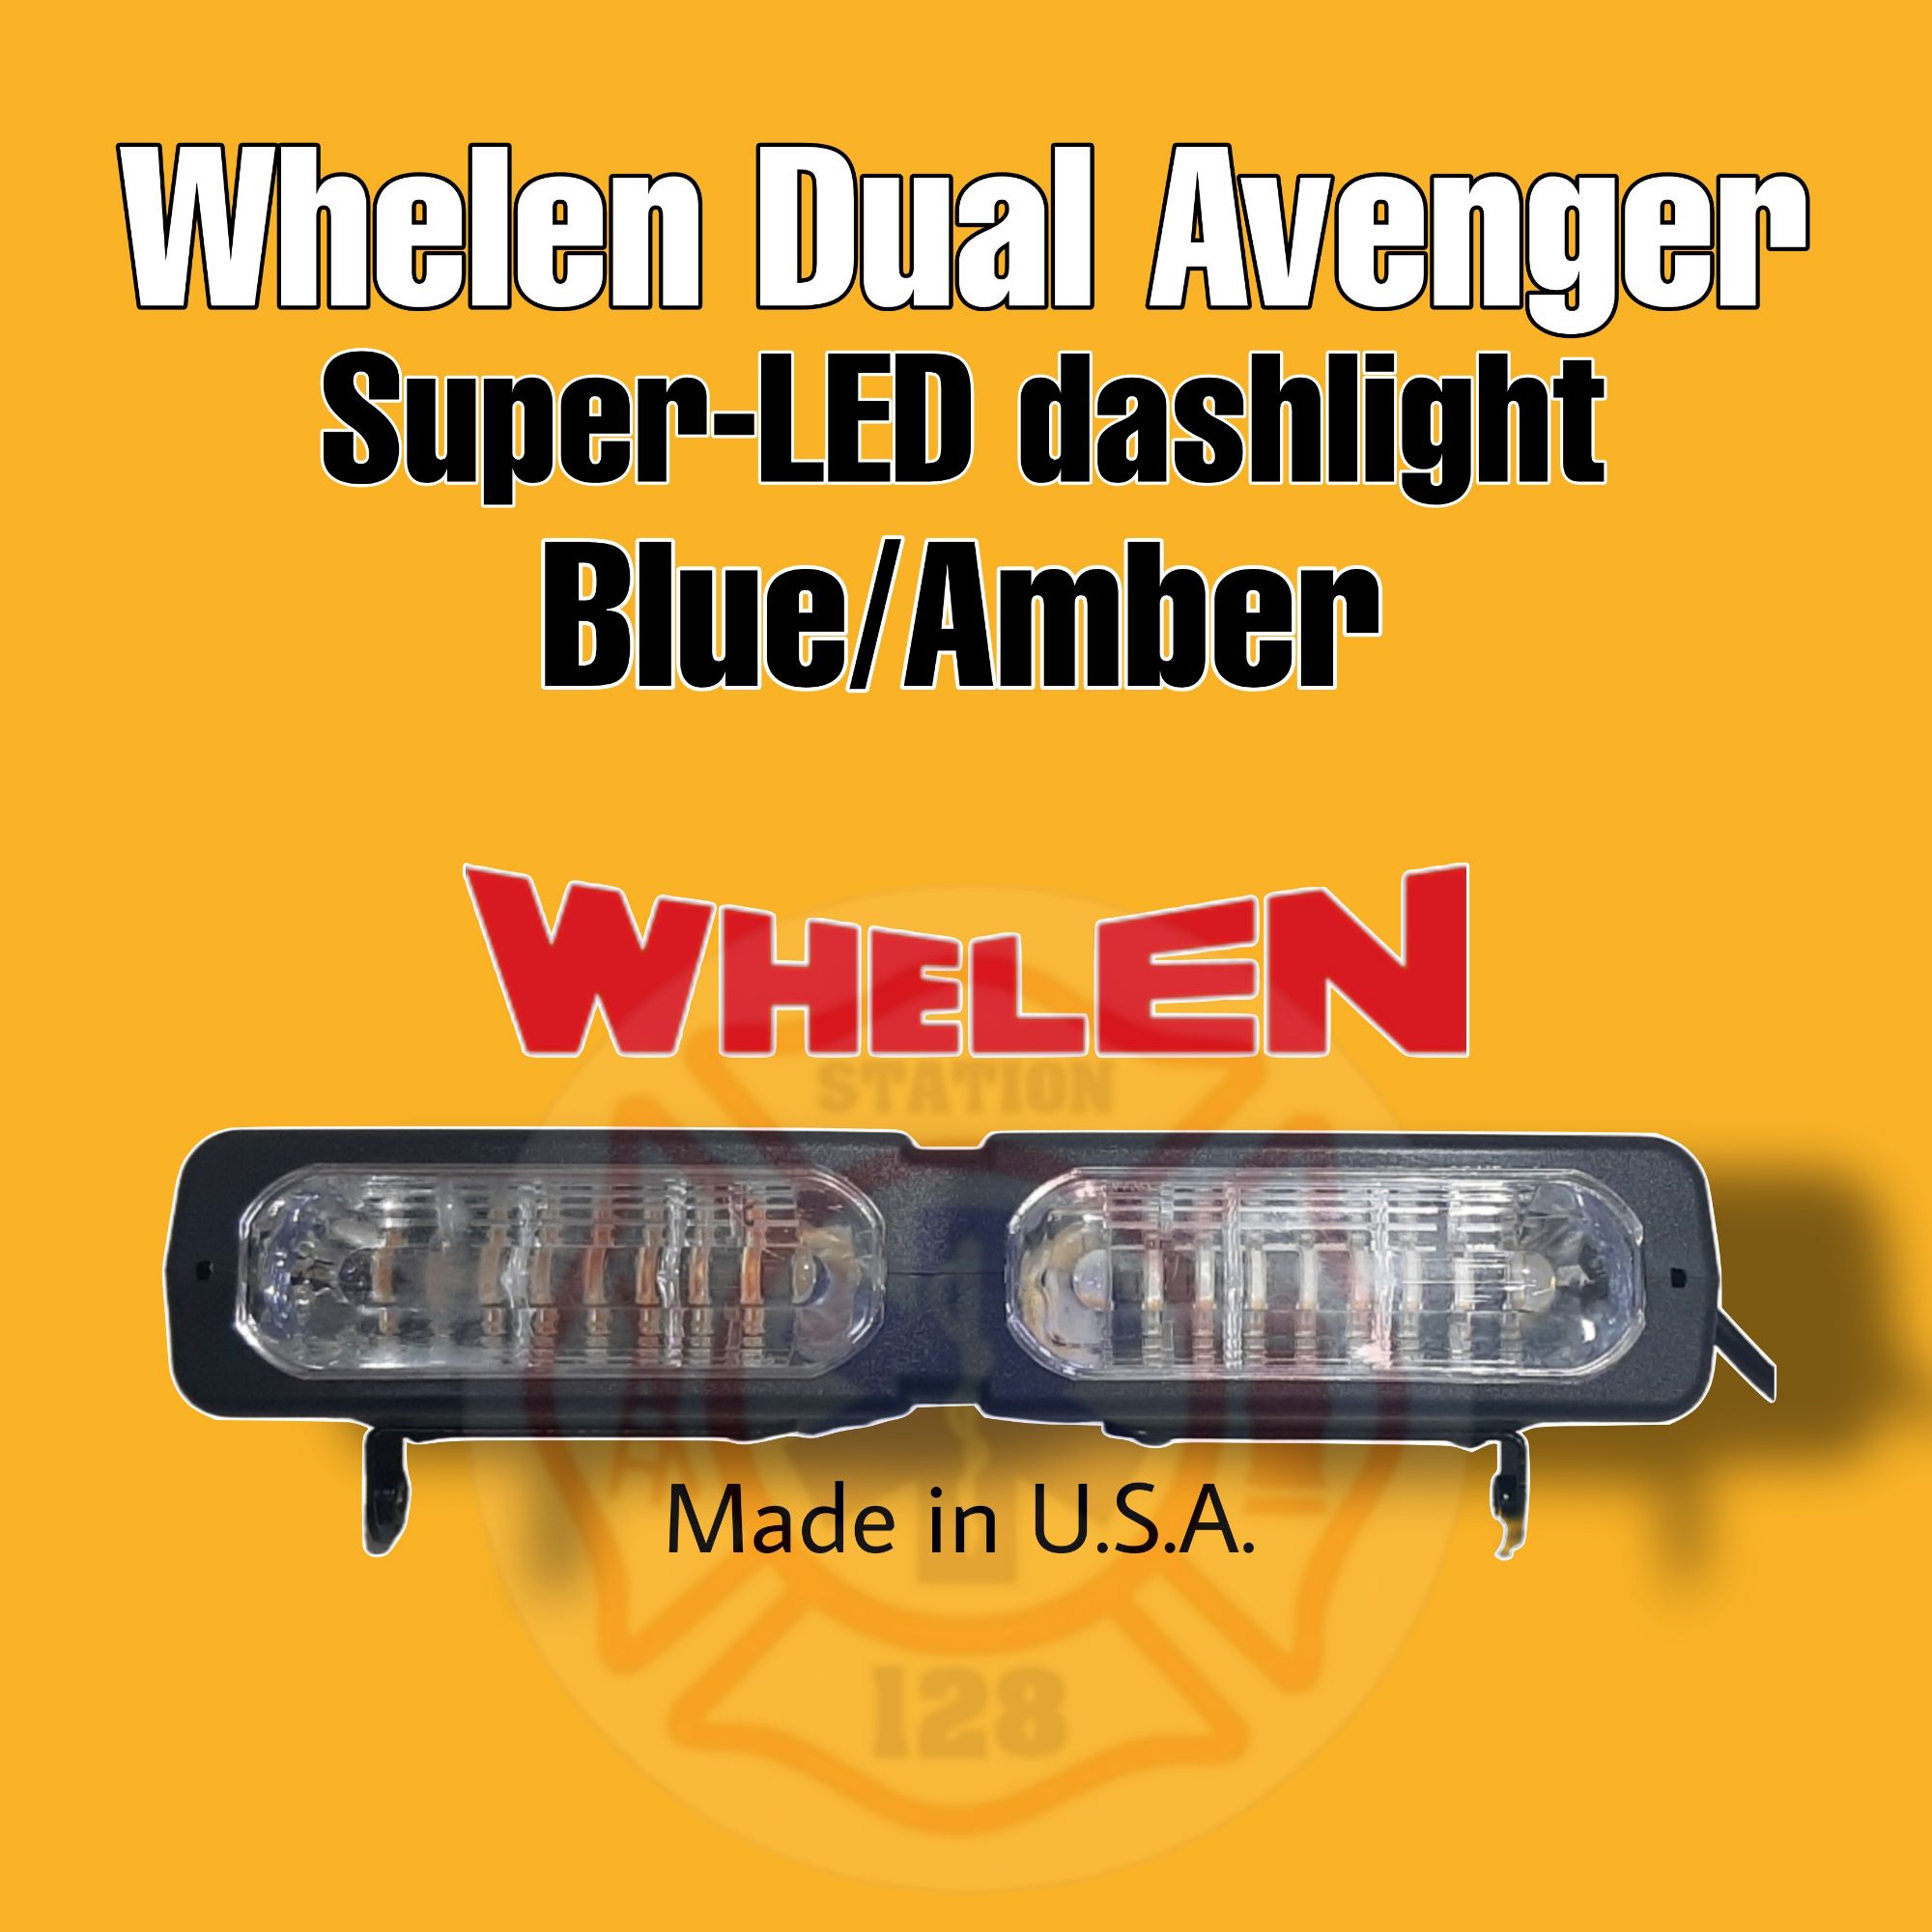 Whelen Dual Avenger Super Led Dashlight